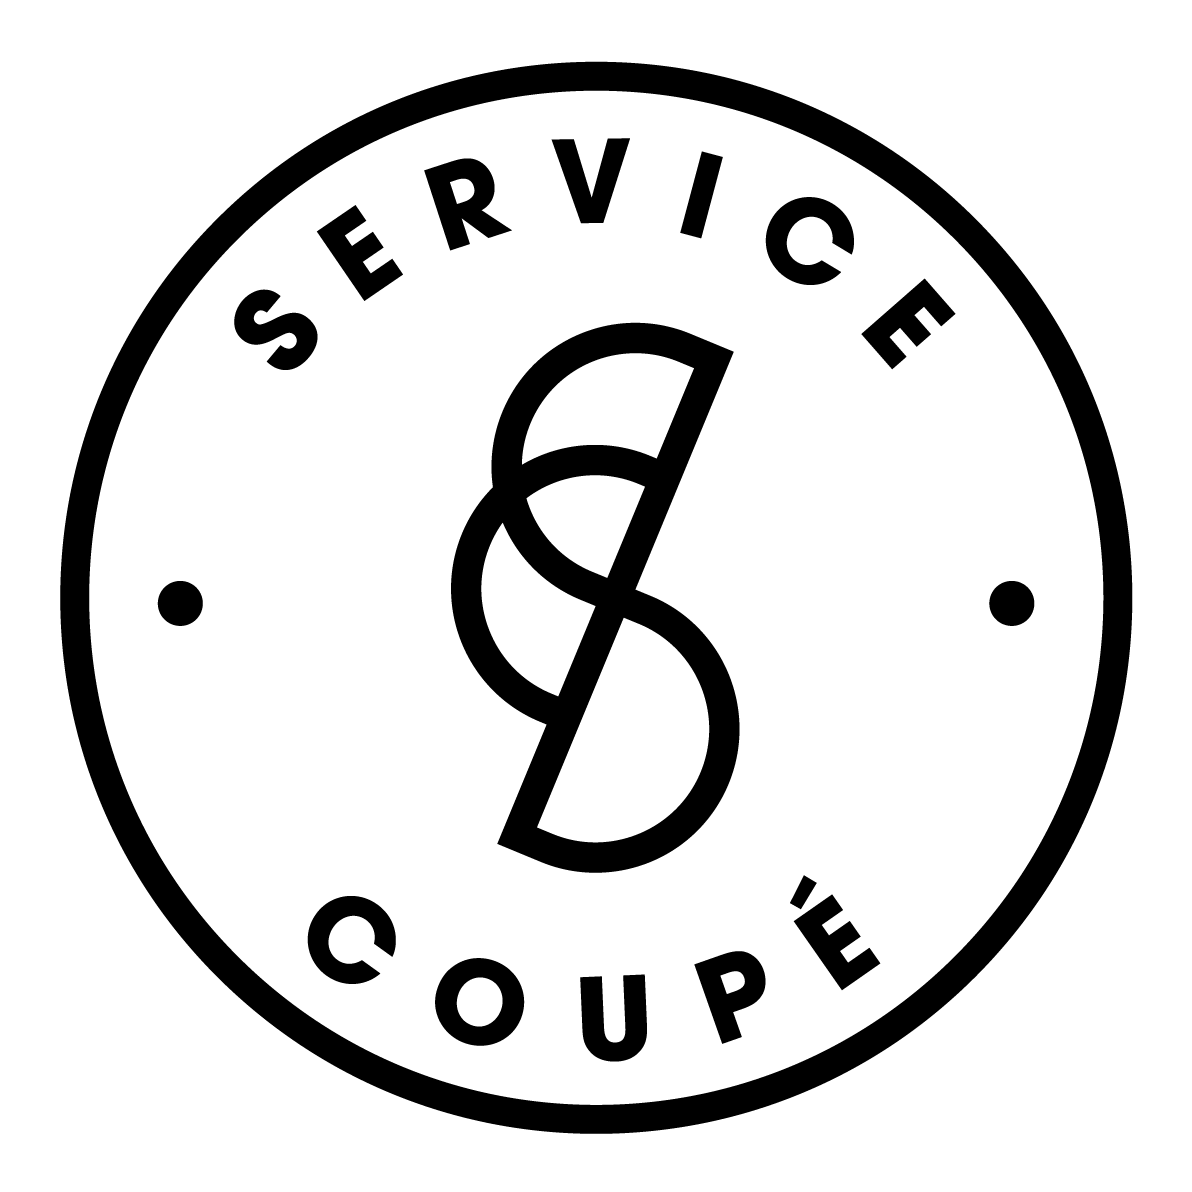 Service Coupé